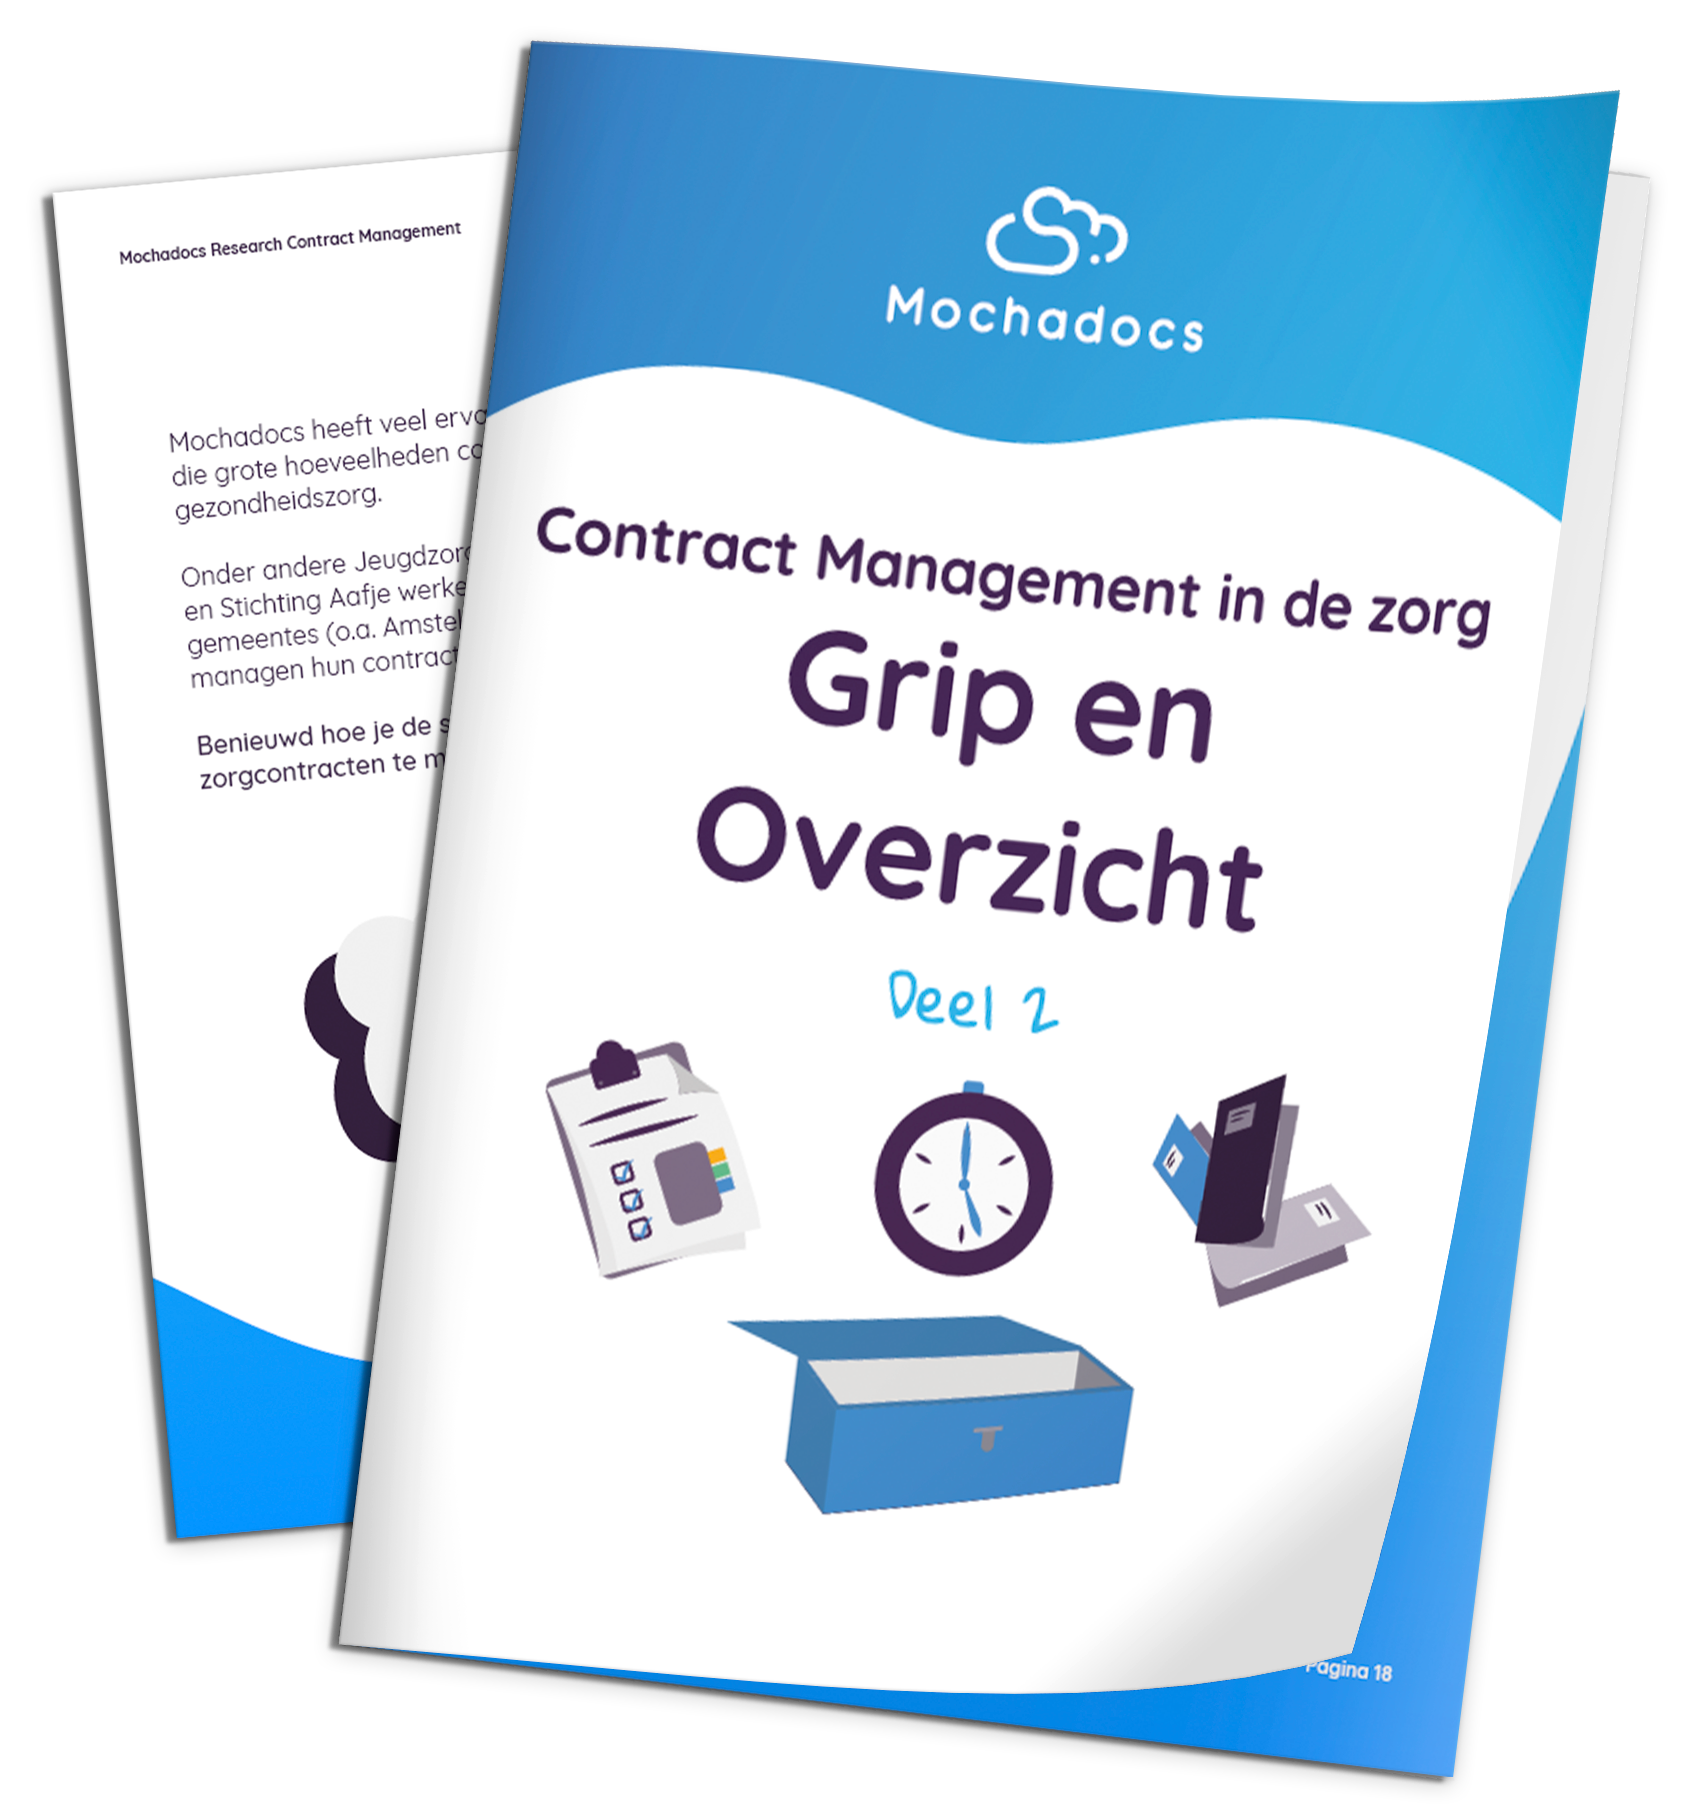 Mochadocs - Contract Management - eBook - Contract Management in de zorg Grip en Overzicht